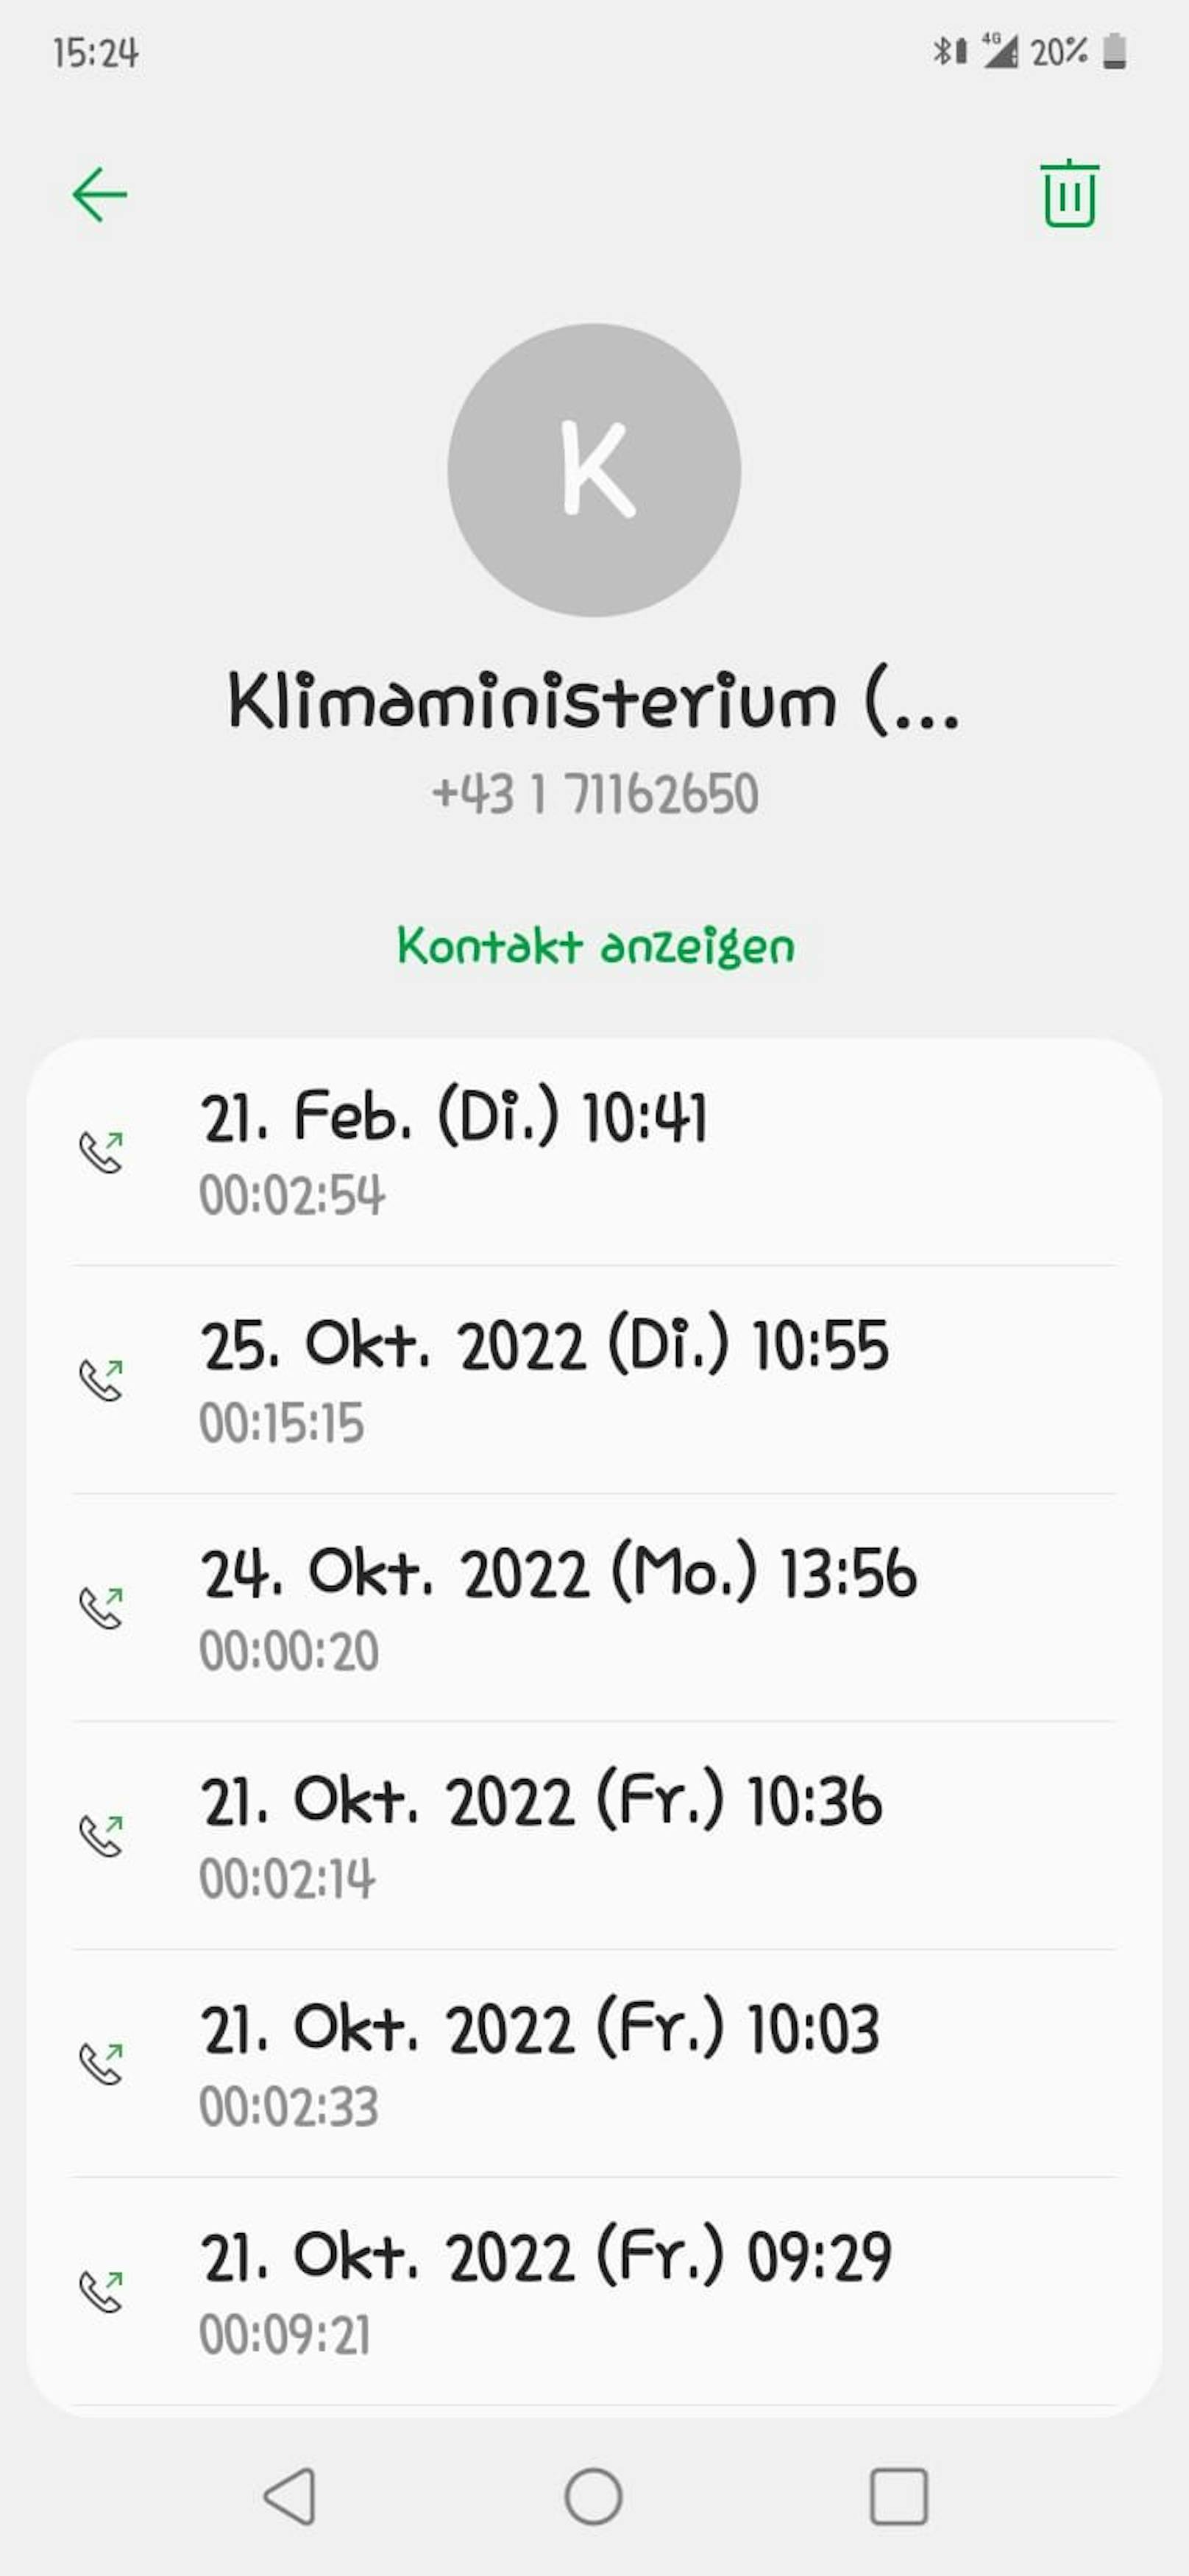 Die Wienerin ruft seit Monaten regelmäßig bei der Klimabonus-Hotline an, bekommt jedoch immer unterschiedliche Auskünfte.